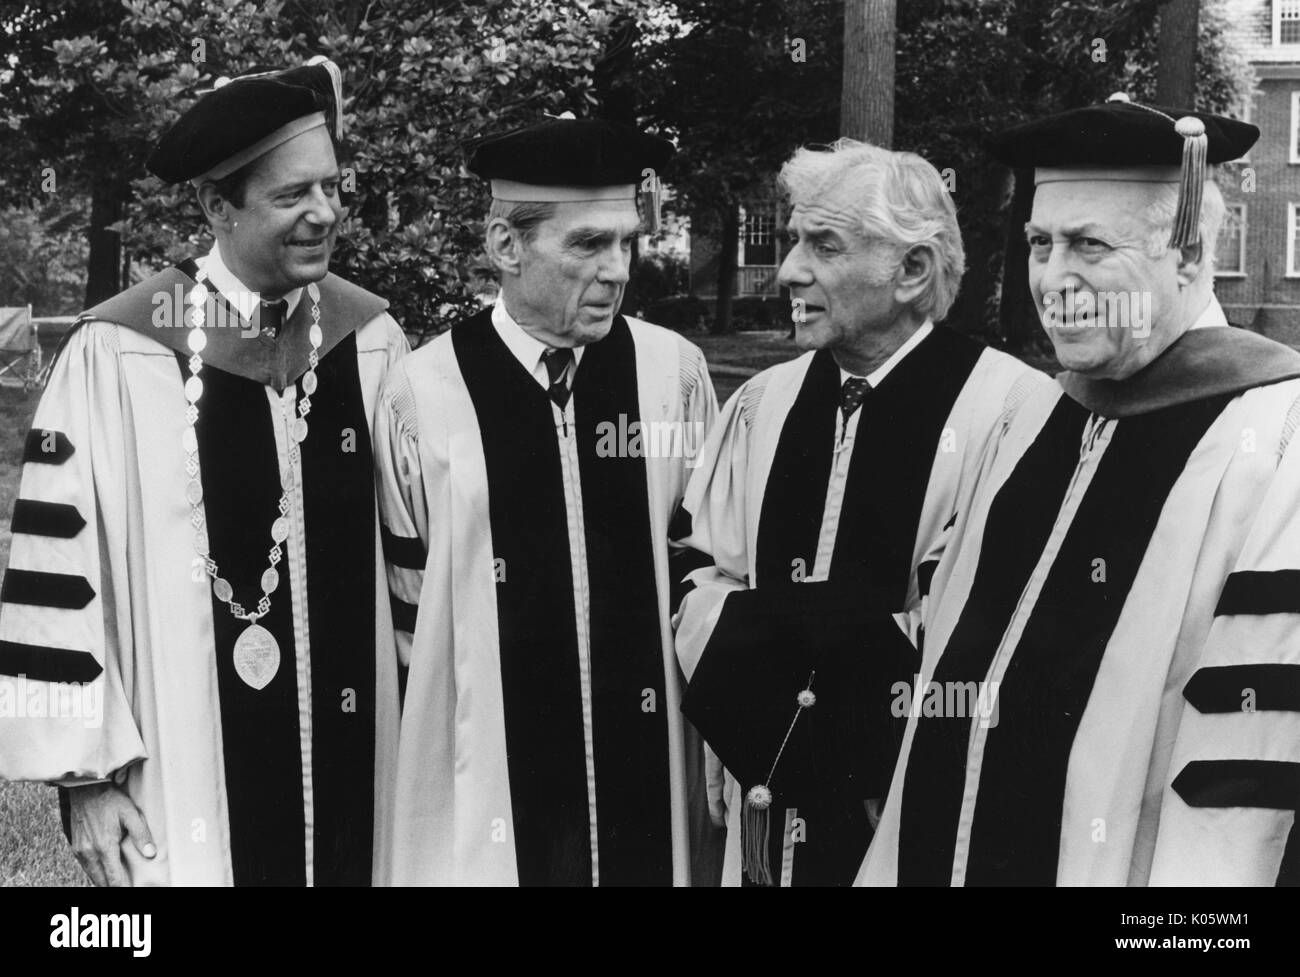 Brustbild von Von links nach rechts: Präsident Steven Muller, Professor Daniel K Ludwig, Musiker Leonard Bernstein, und Professor Milton Reder, in Gap und Kleid auf einem College quad für Johns Hopkins 1980 Beginn, 1980. Stockfoto